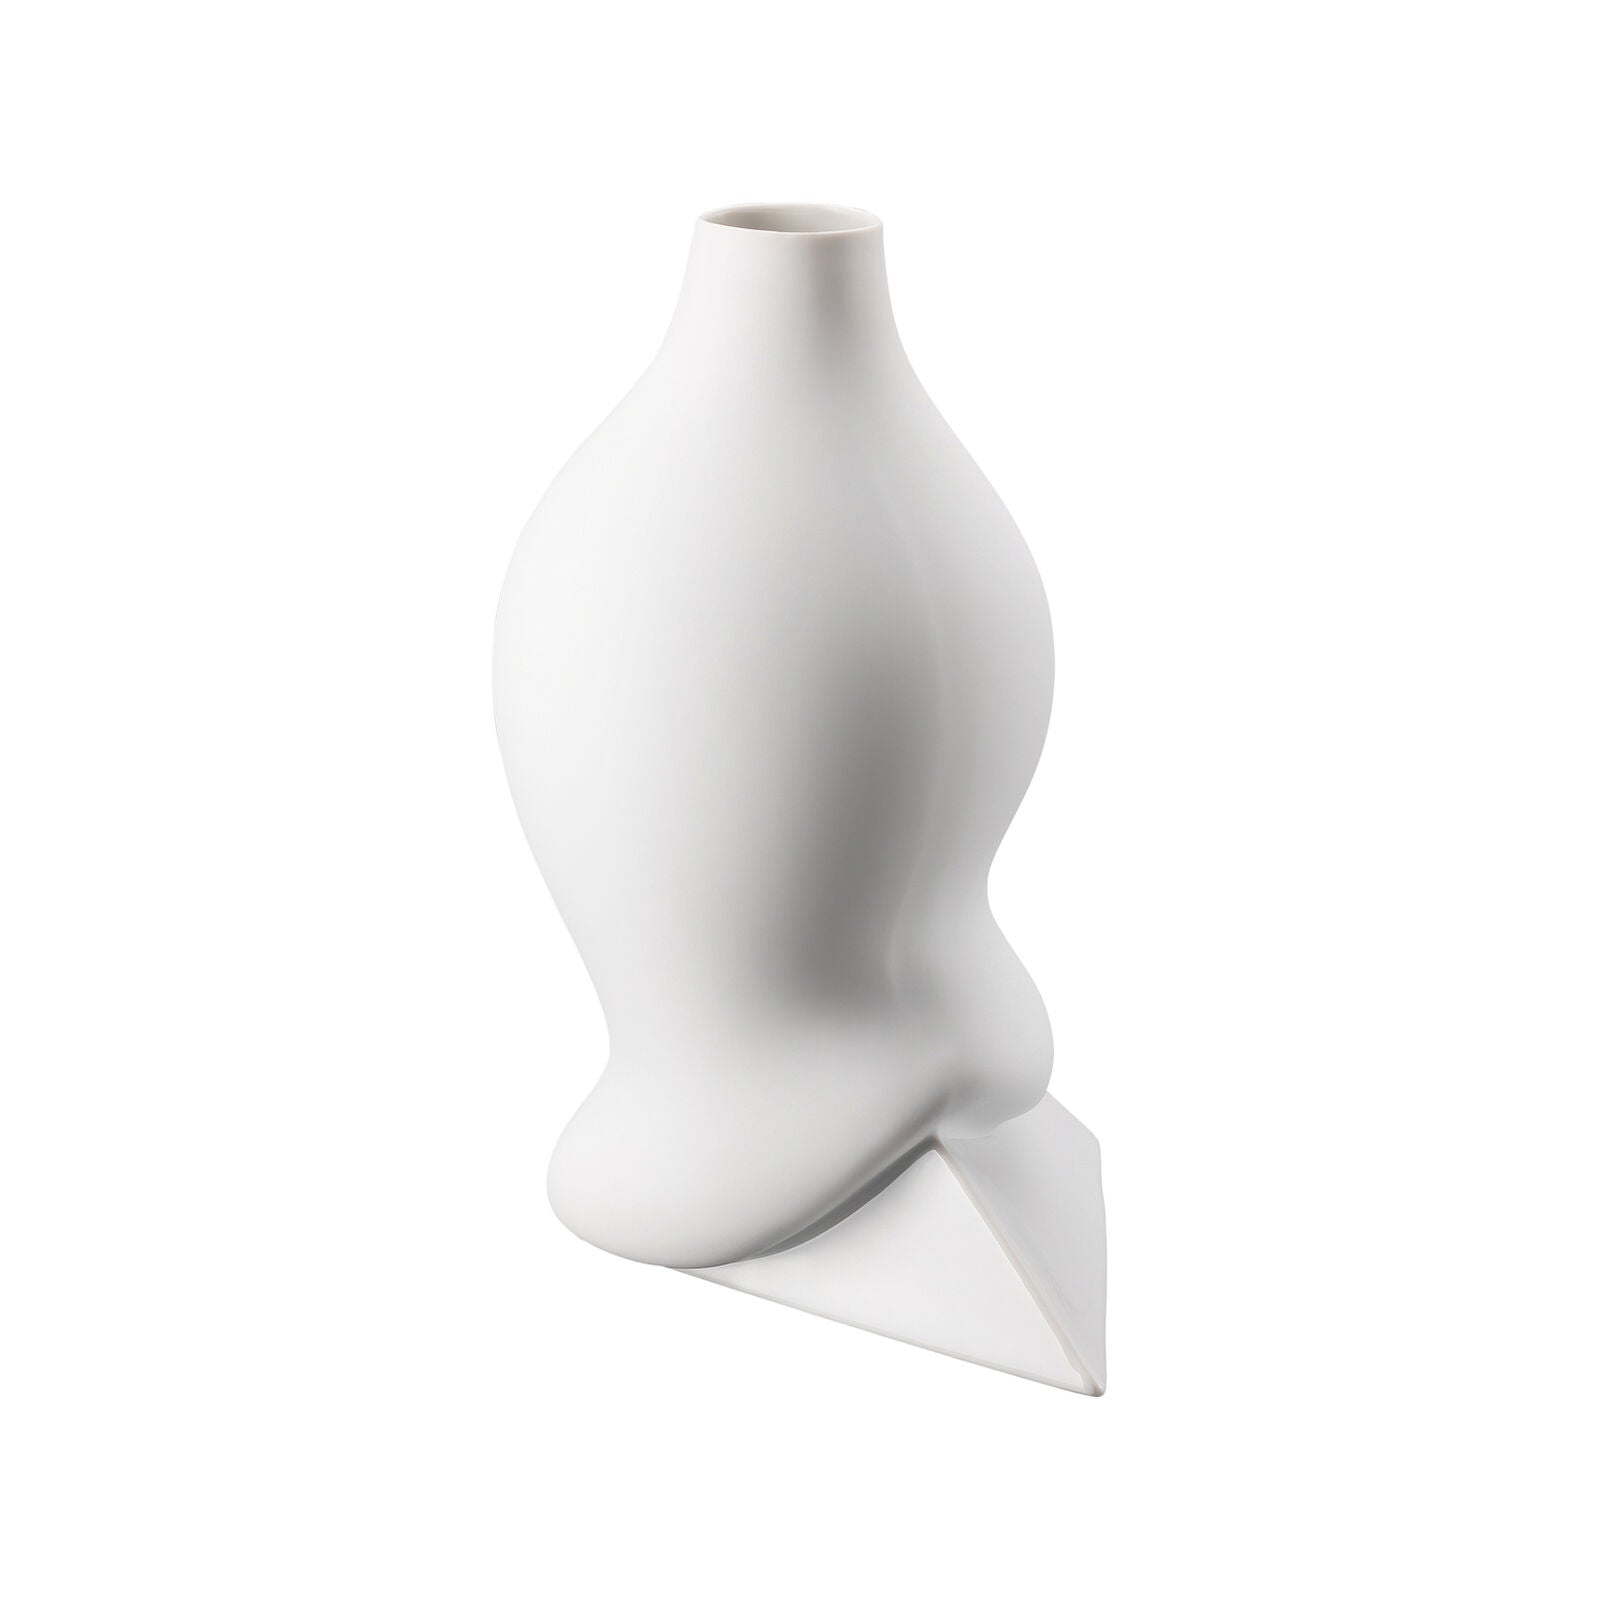 Rosenthal Sirop vase, 28 cms